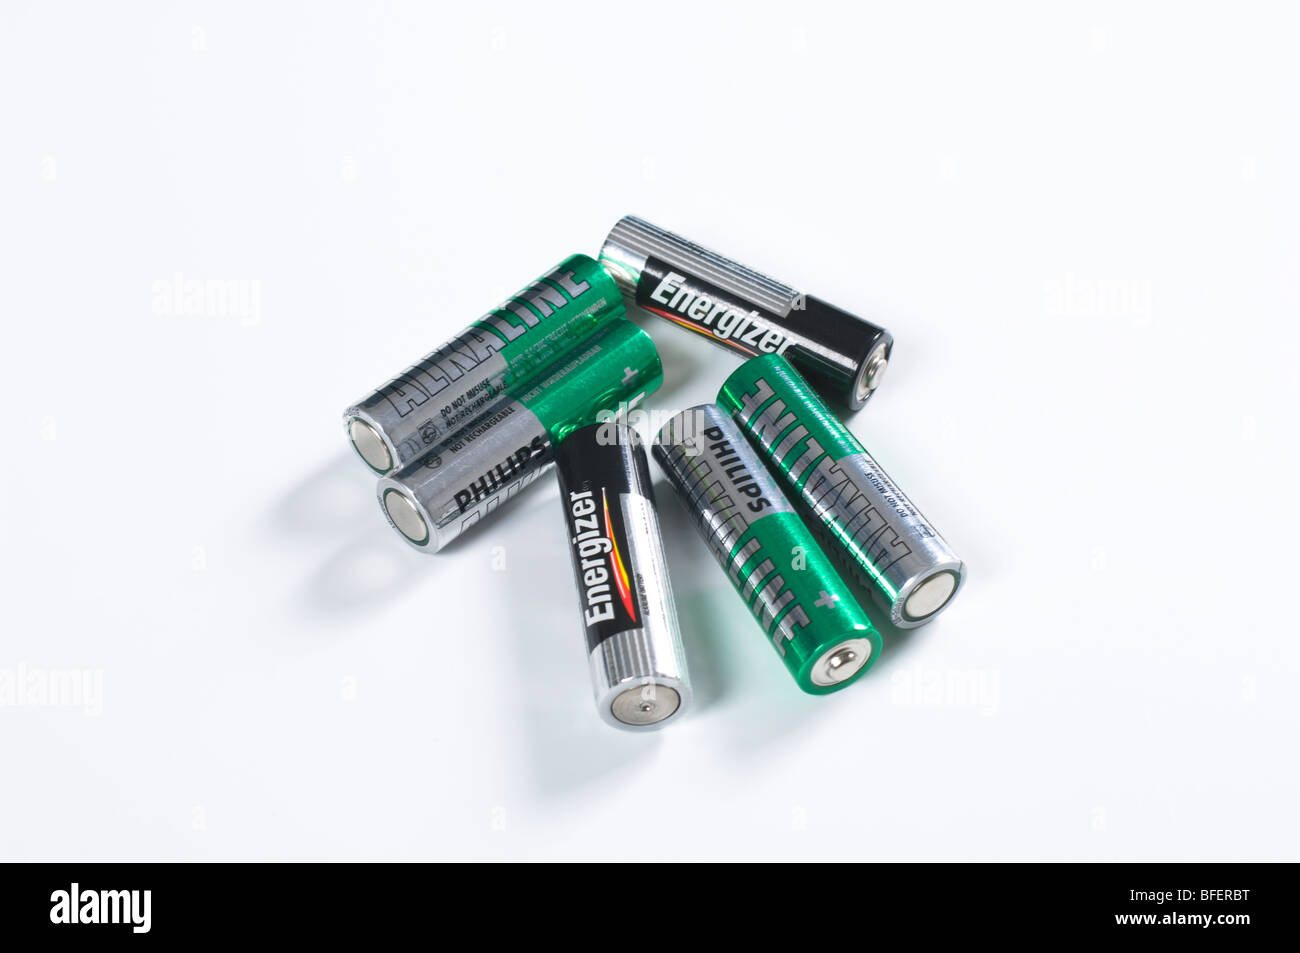 AA batteries Stock Photo